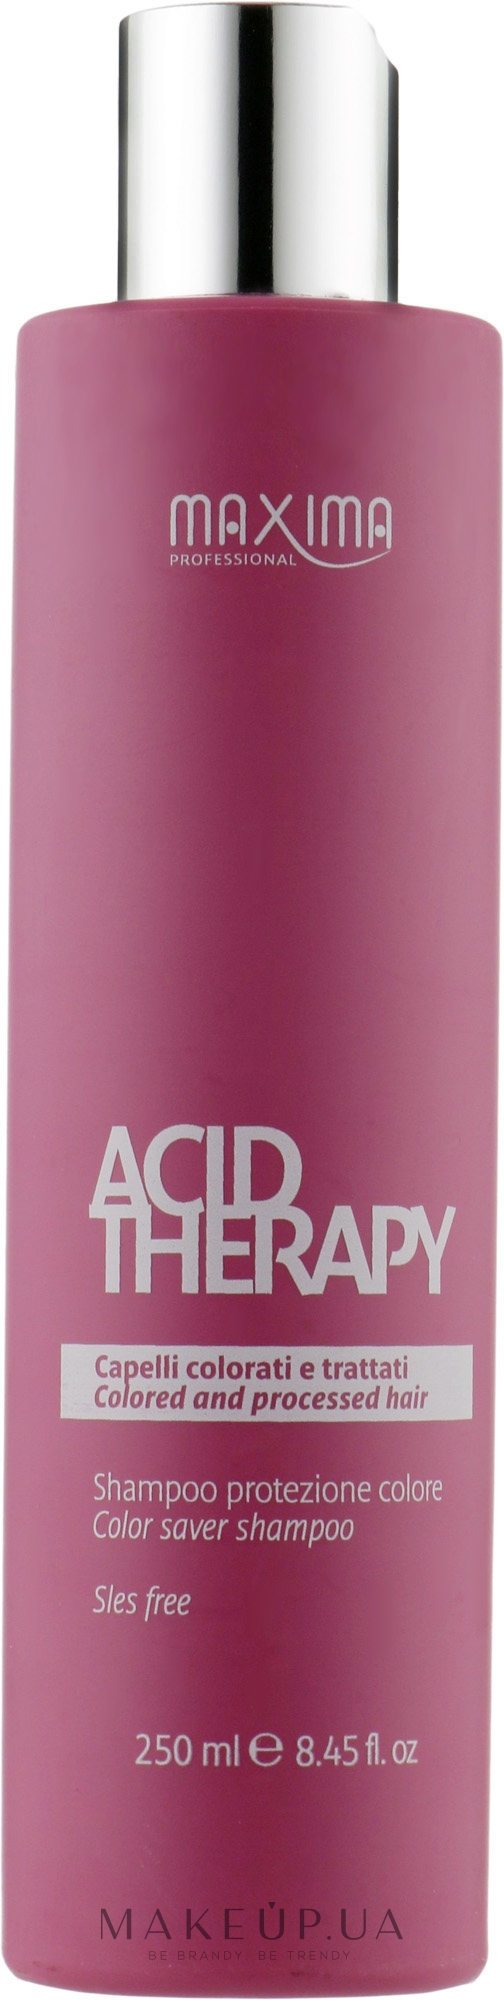 Шампунь для защиты цвета окрашенных волос - Maxima Acid Therapy Shampoo — фото 250ml